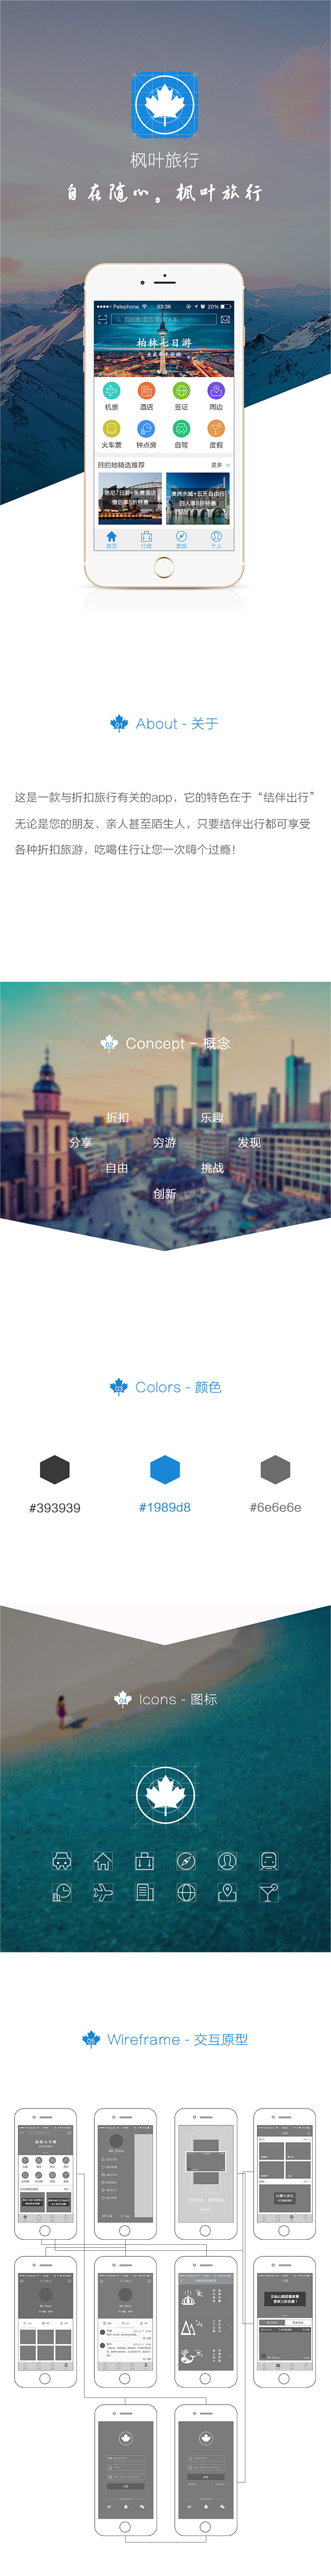 枫叶旅行—app展示